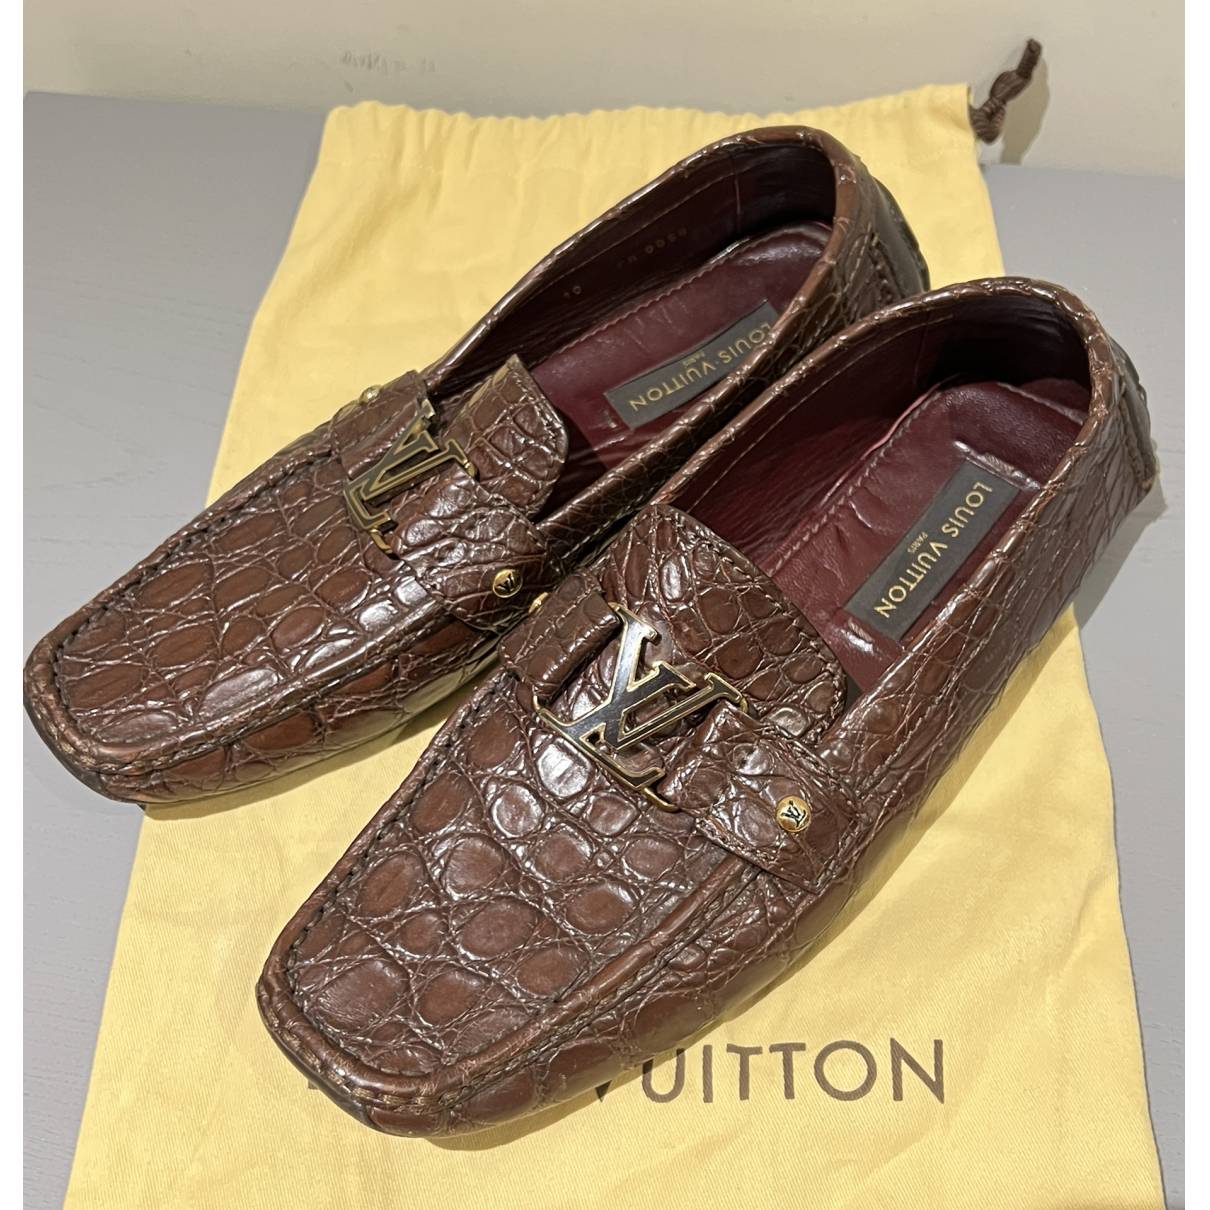 Monte carlo crocodile flats Louis Vuitton Brown size 10 US in Crocodile -